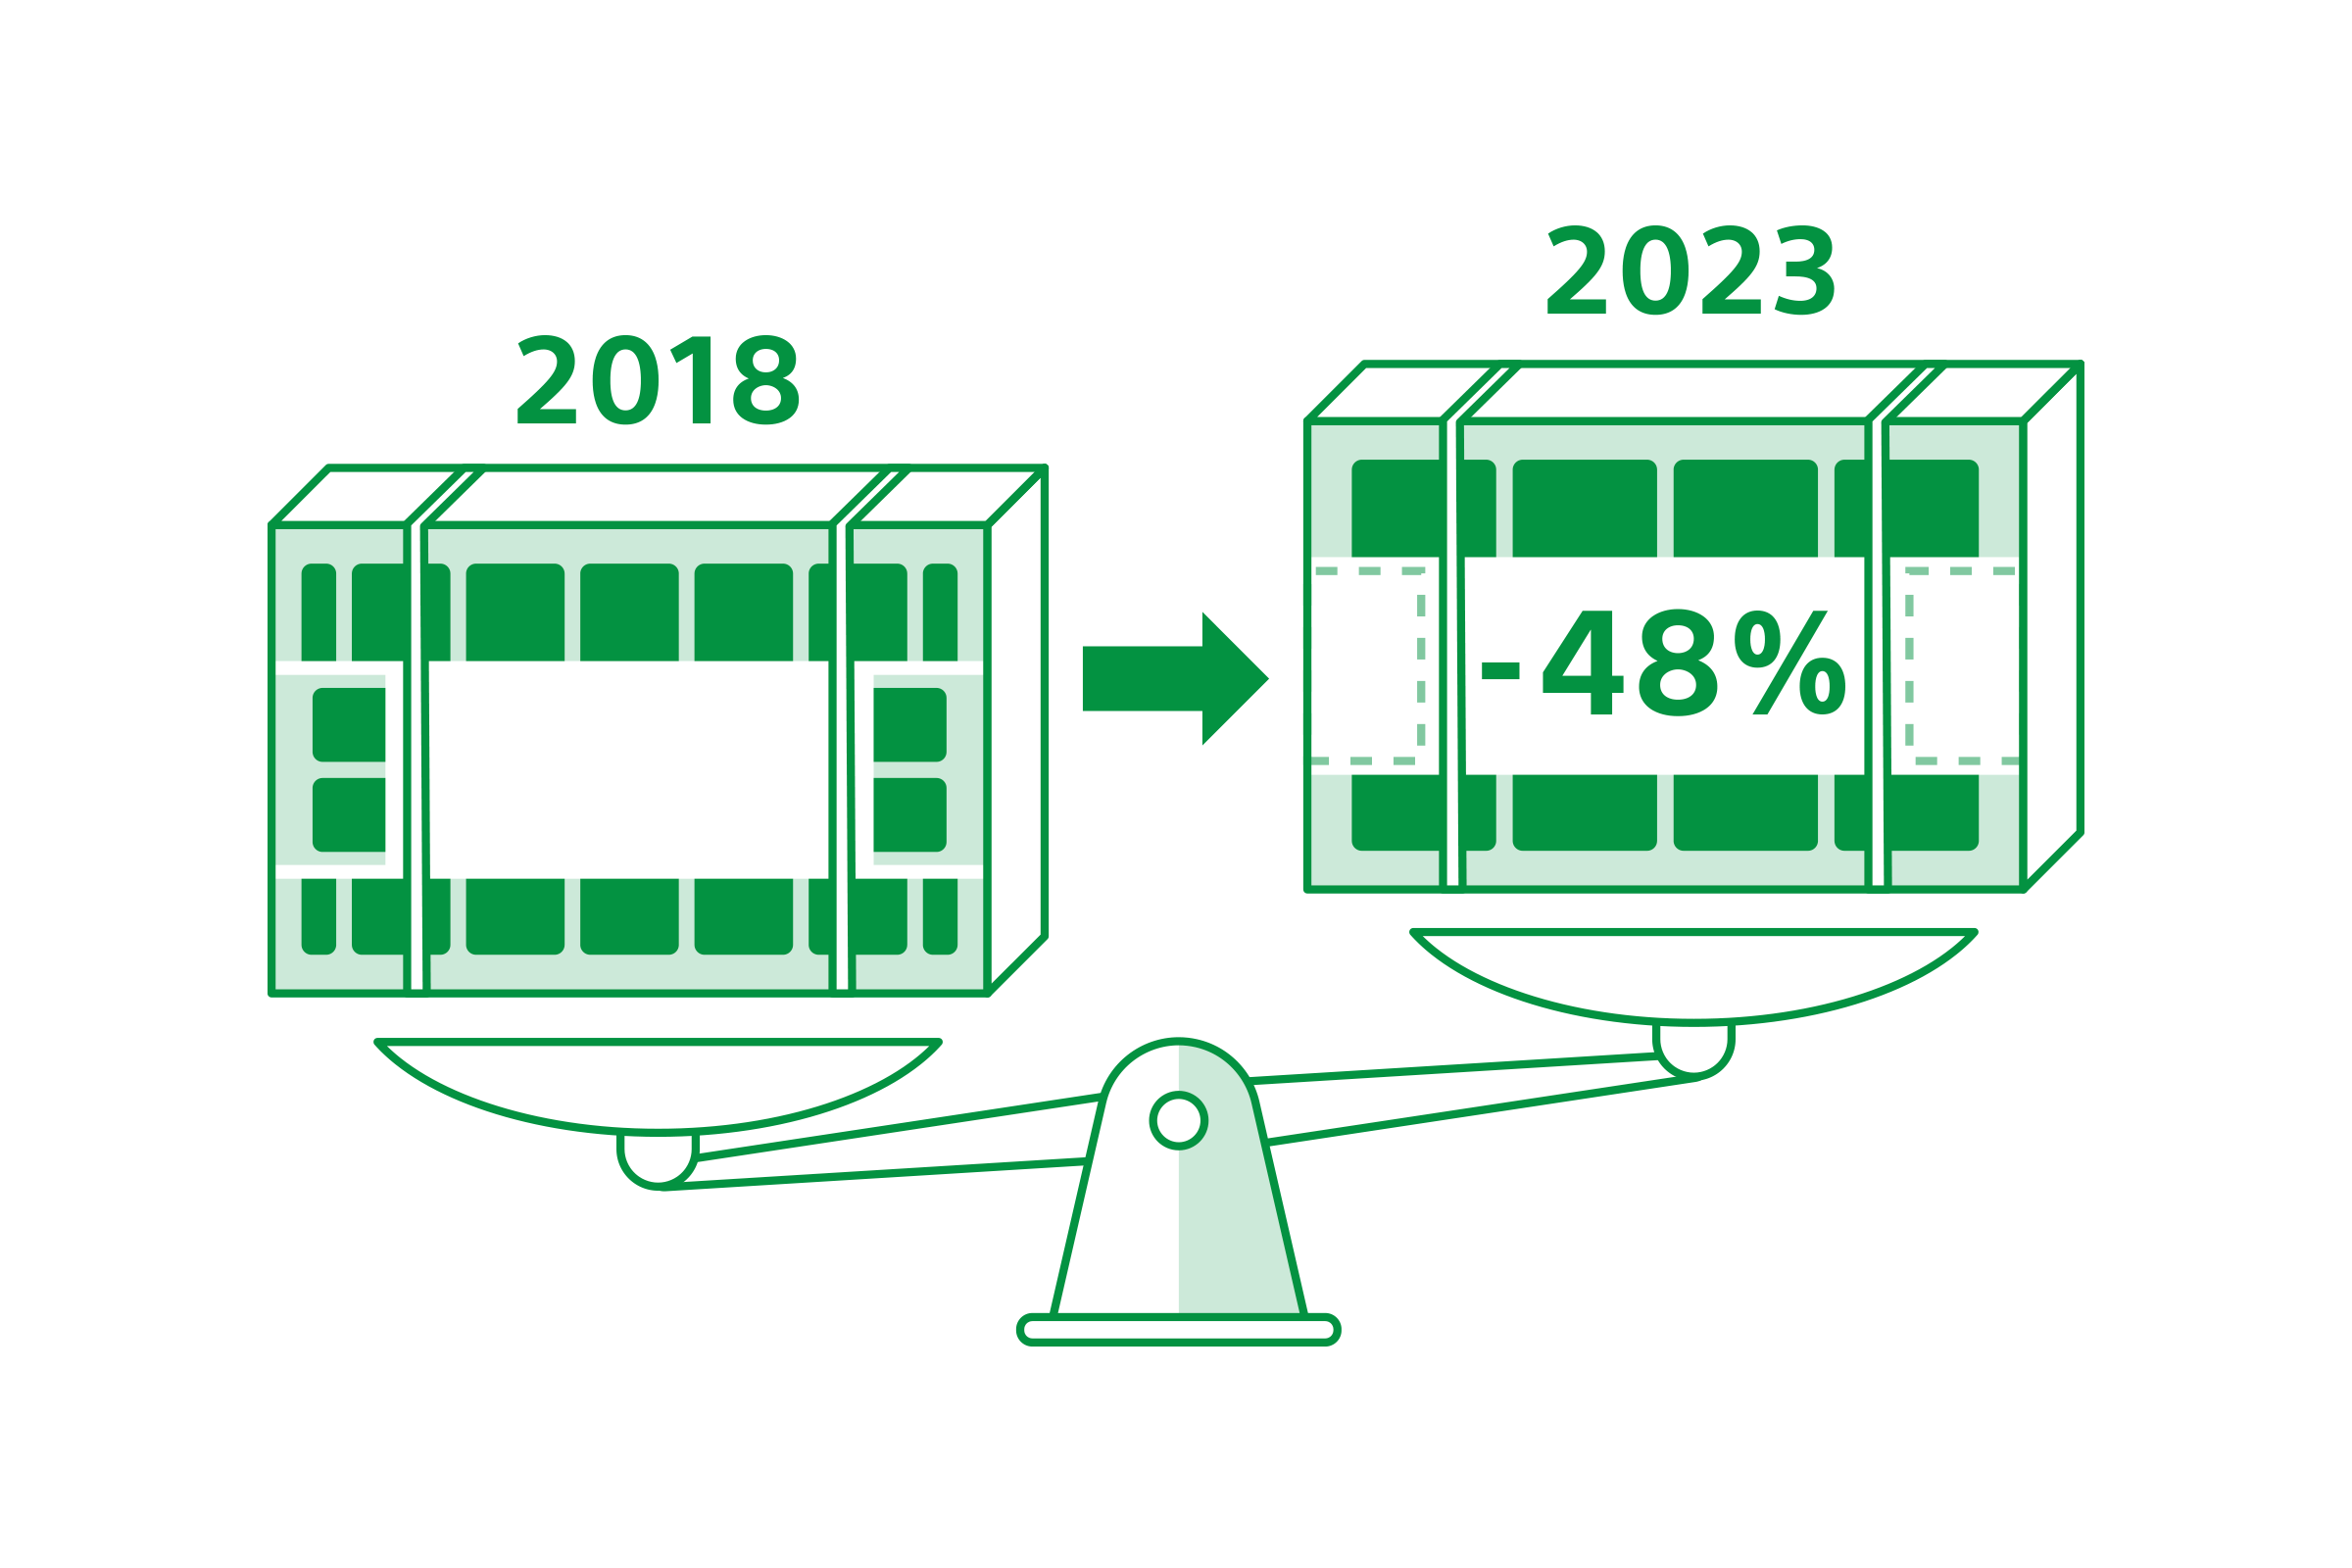 2つのパッケージを表した画像で、2018年から2023年まで48%の削減したことを示している。